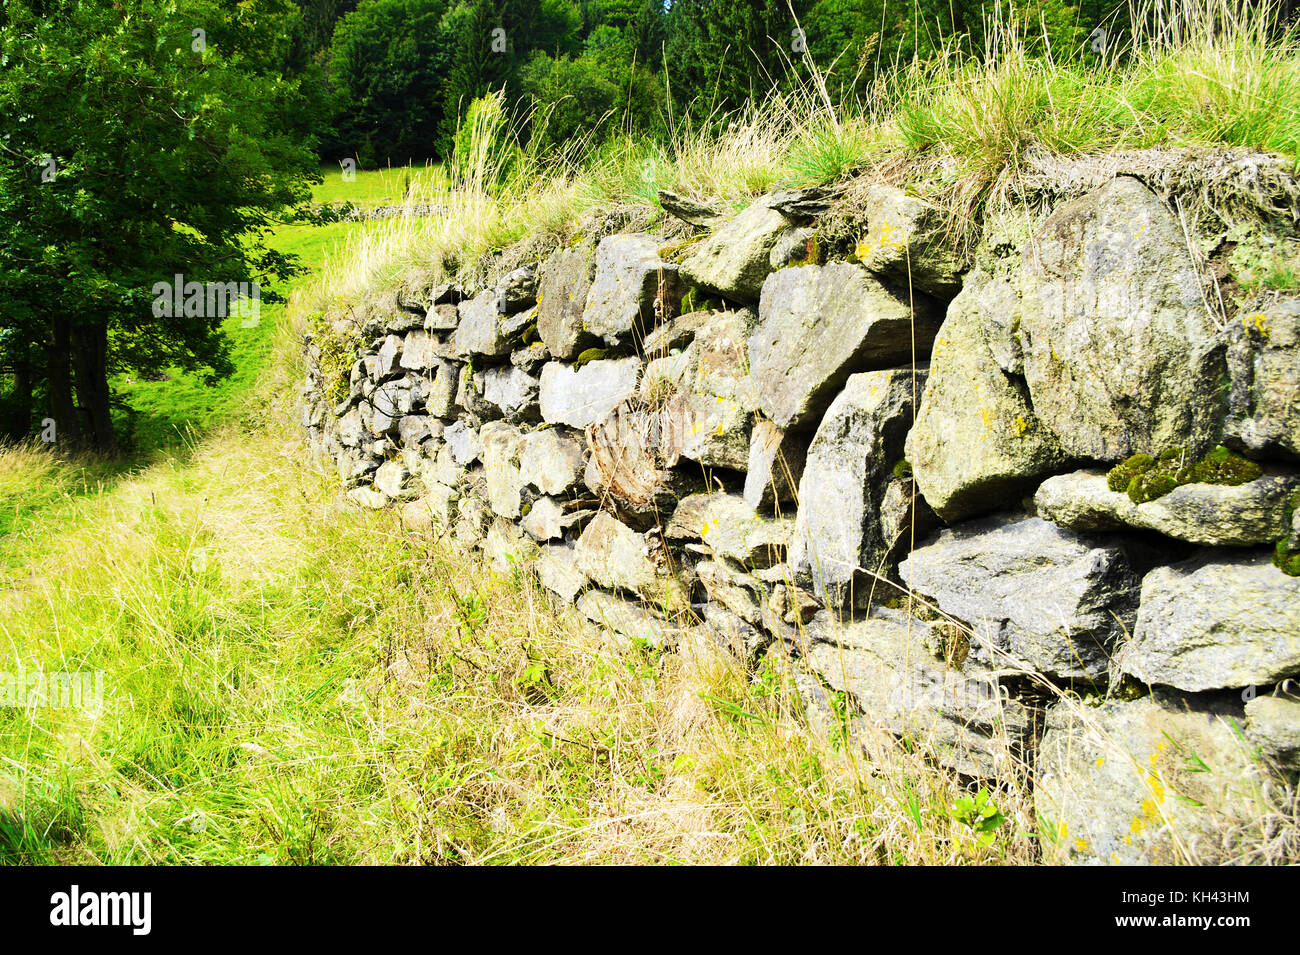 Muro de contención de piedra rugosa. viejo muro de retención junto a los senderos en el parque paisajístico de las montañas owl, los sudetes, al sur-oeste de Polonia. Foto de stock